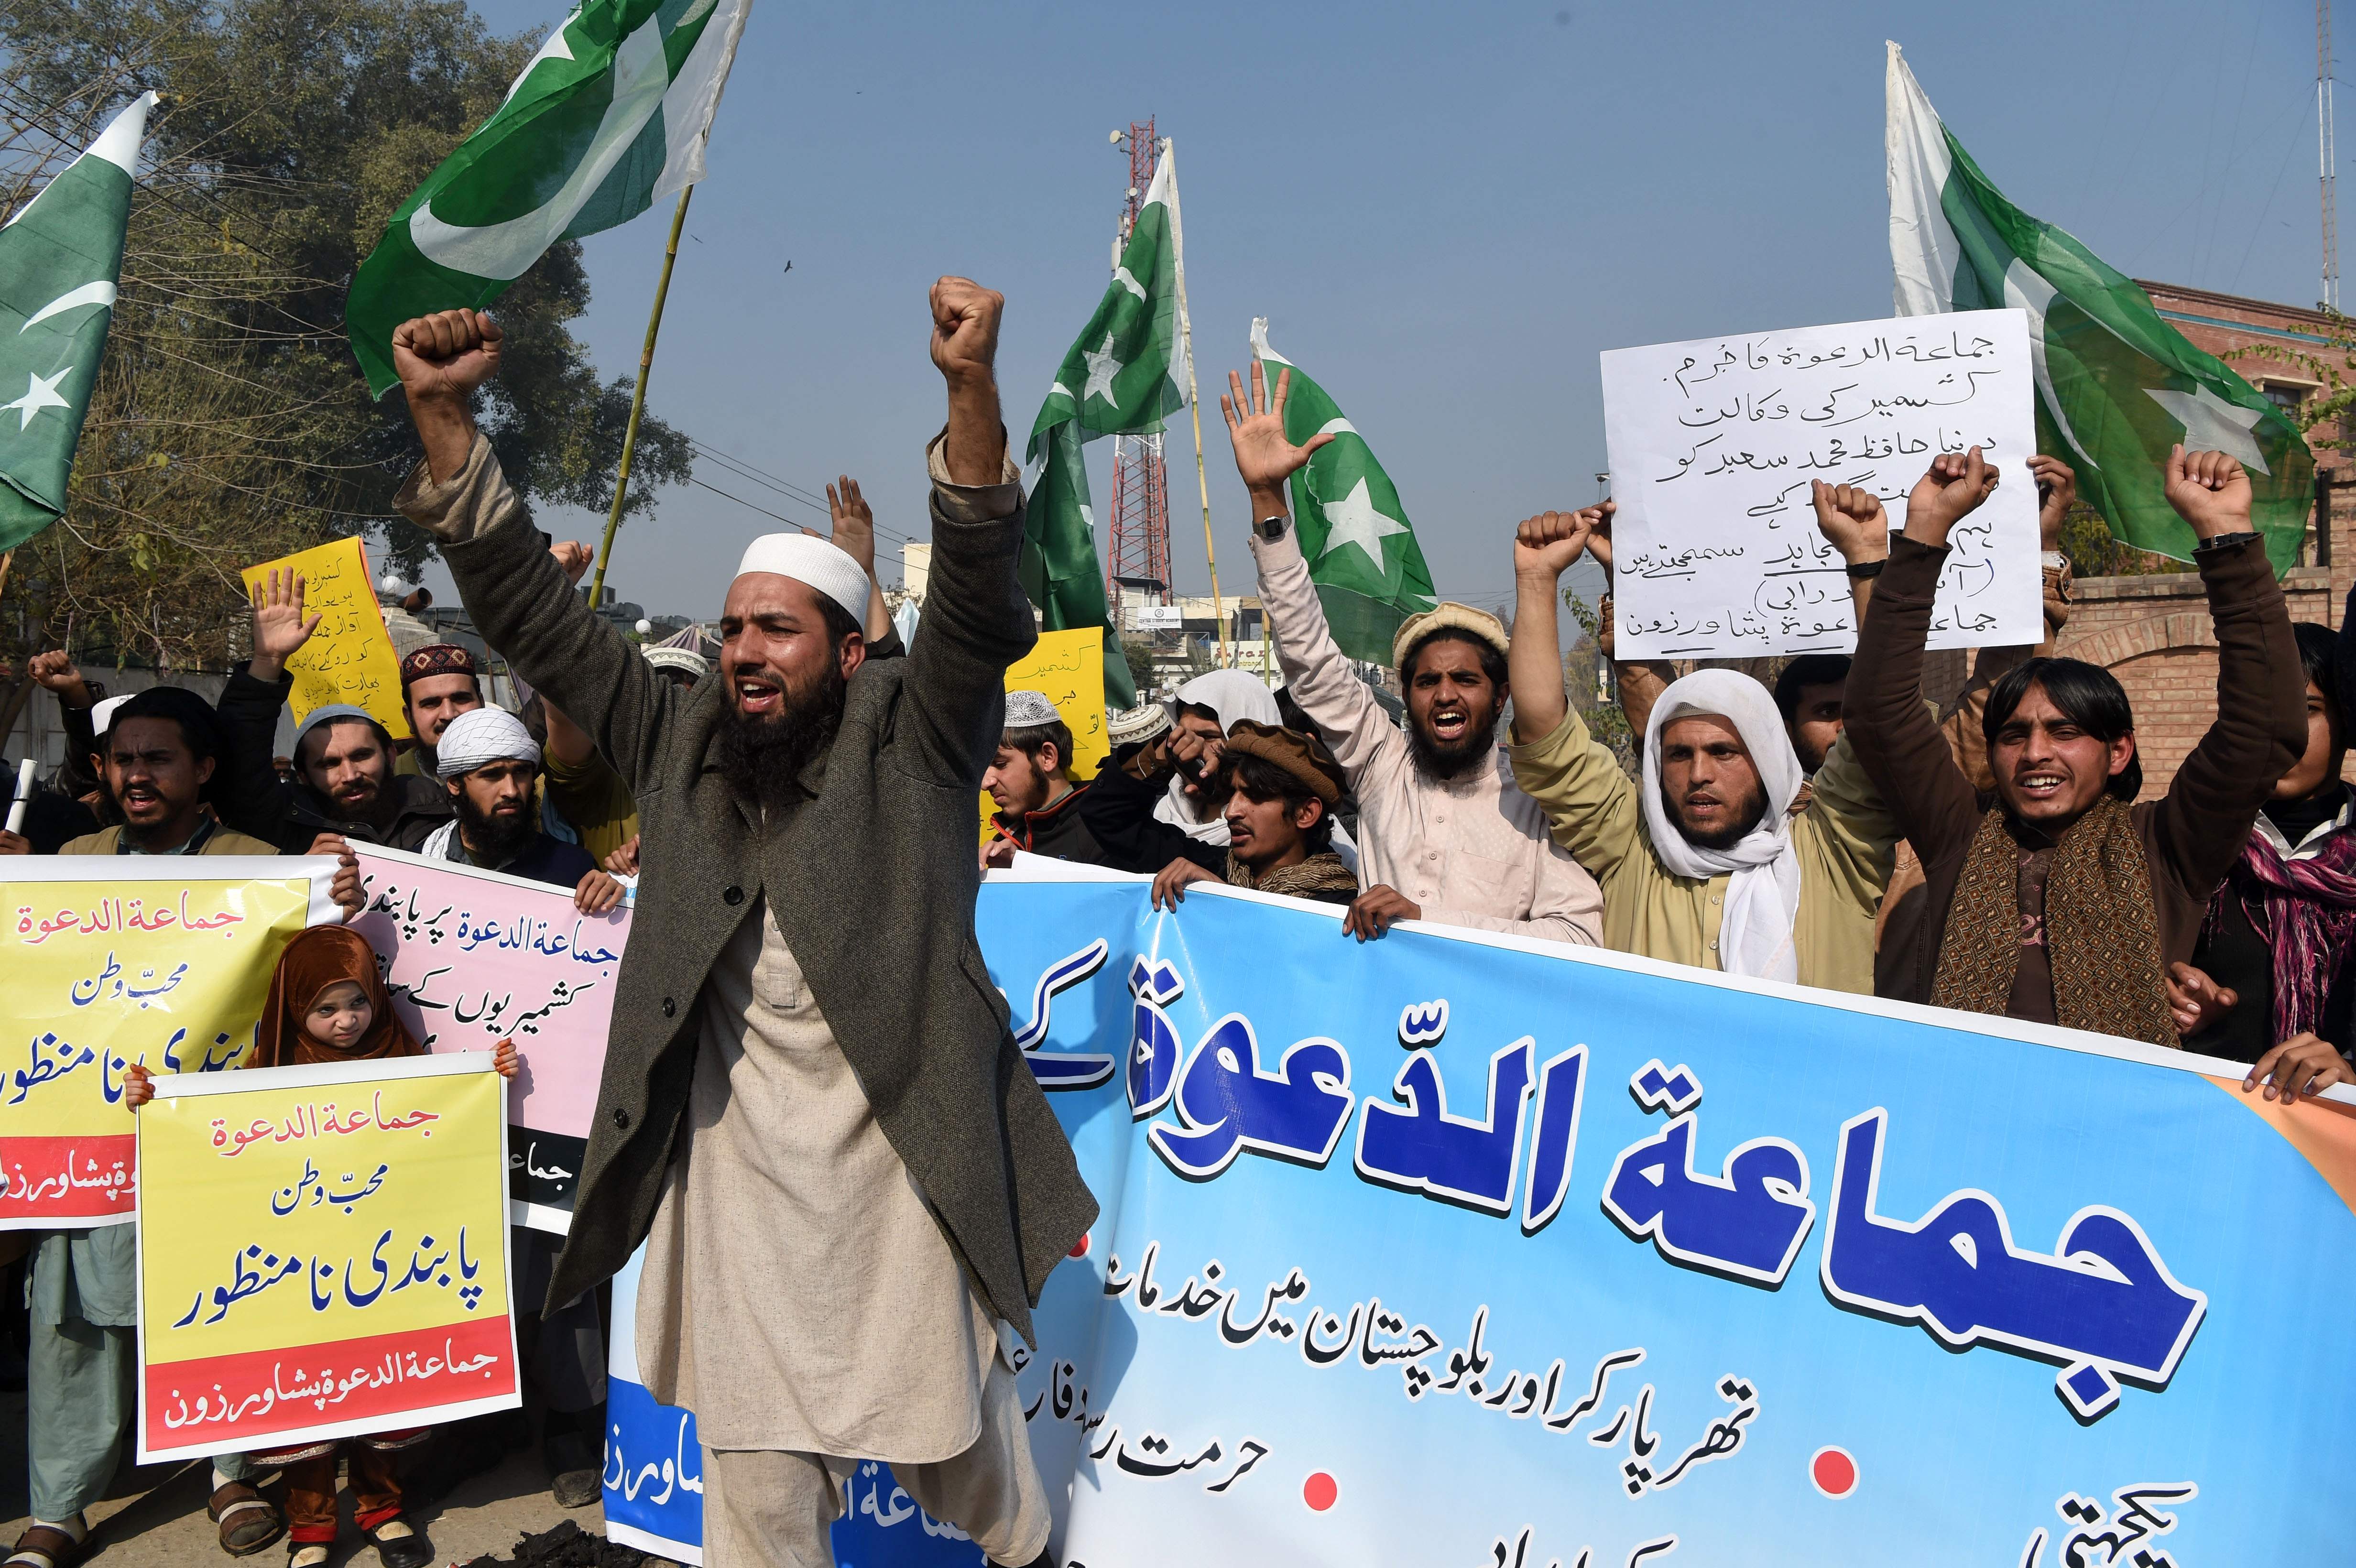 مظاهرات جماعة الدعوة فى باكستان احتجاجًا على احتجاز حافظ سعيد زعيم الجماعة